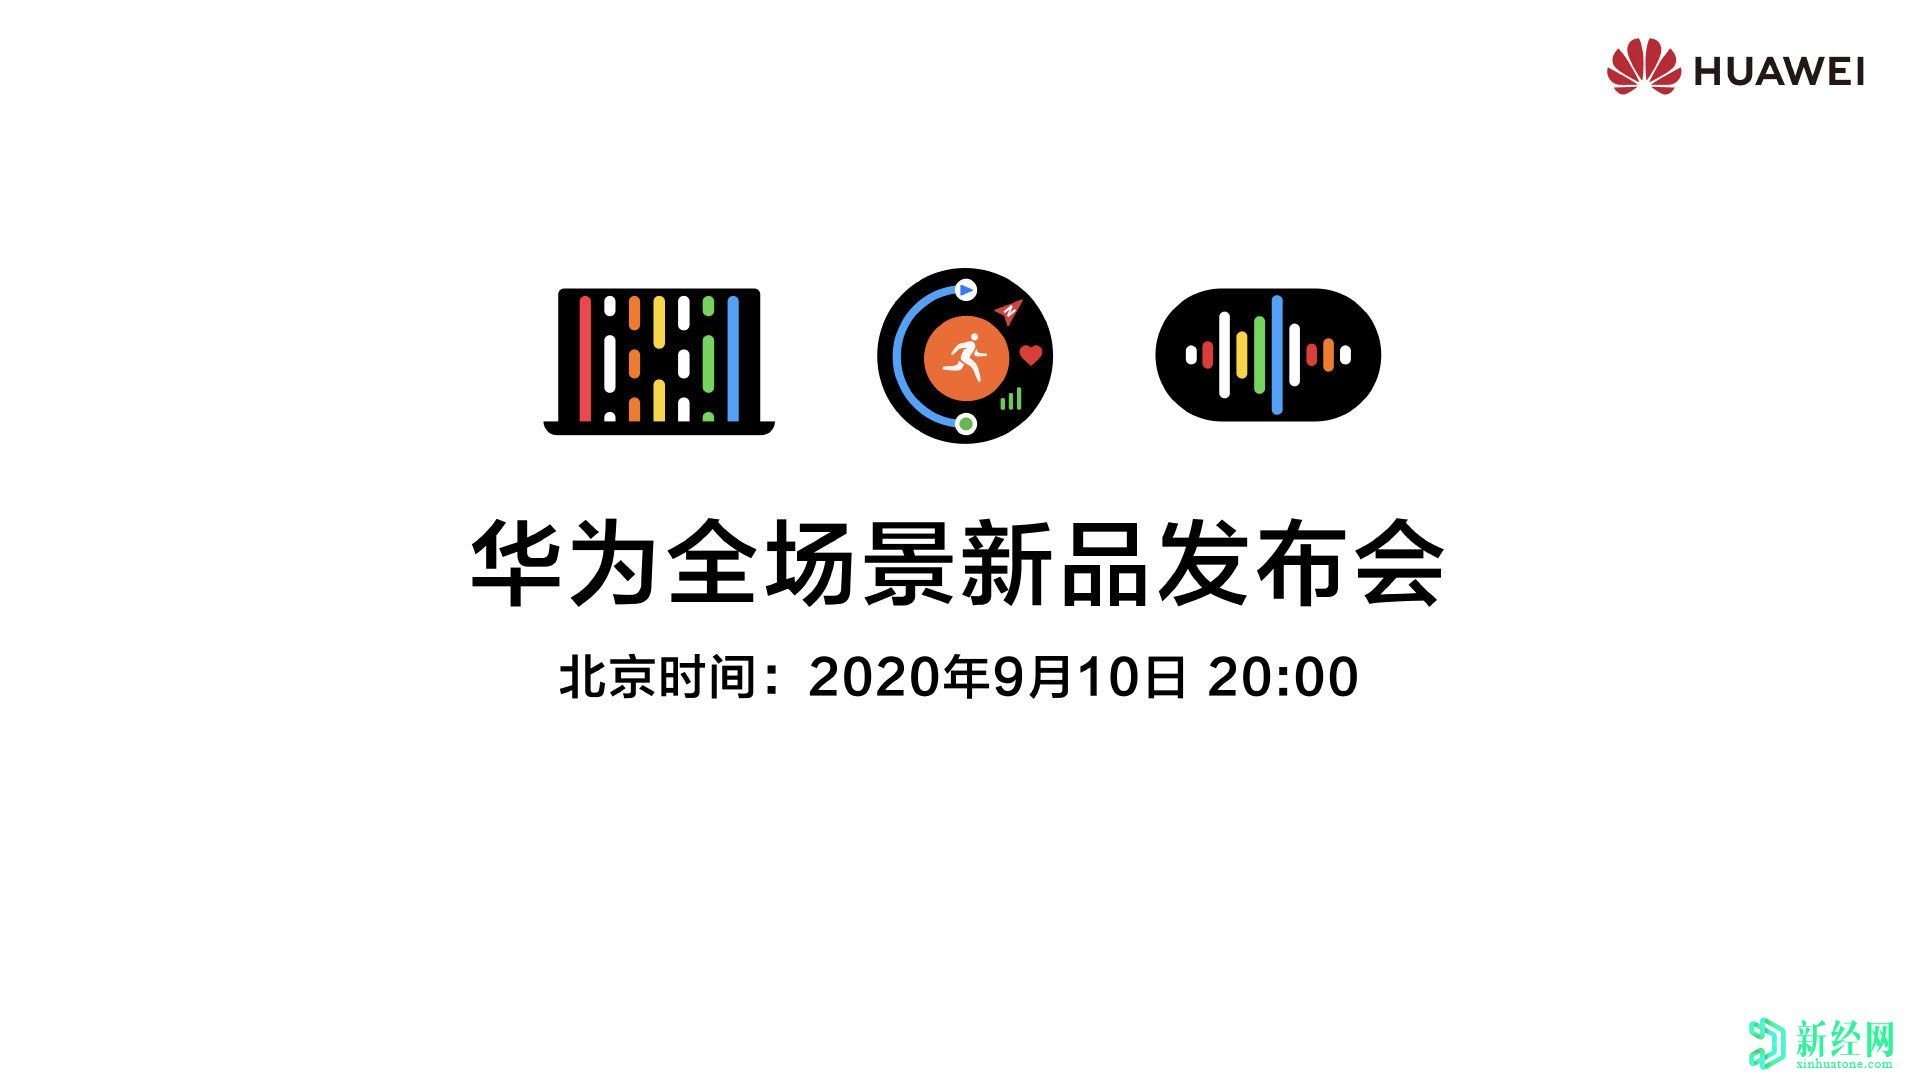 华为定于9月10日举行活动。海报暗示了三种新产品